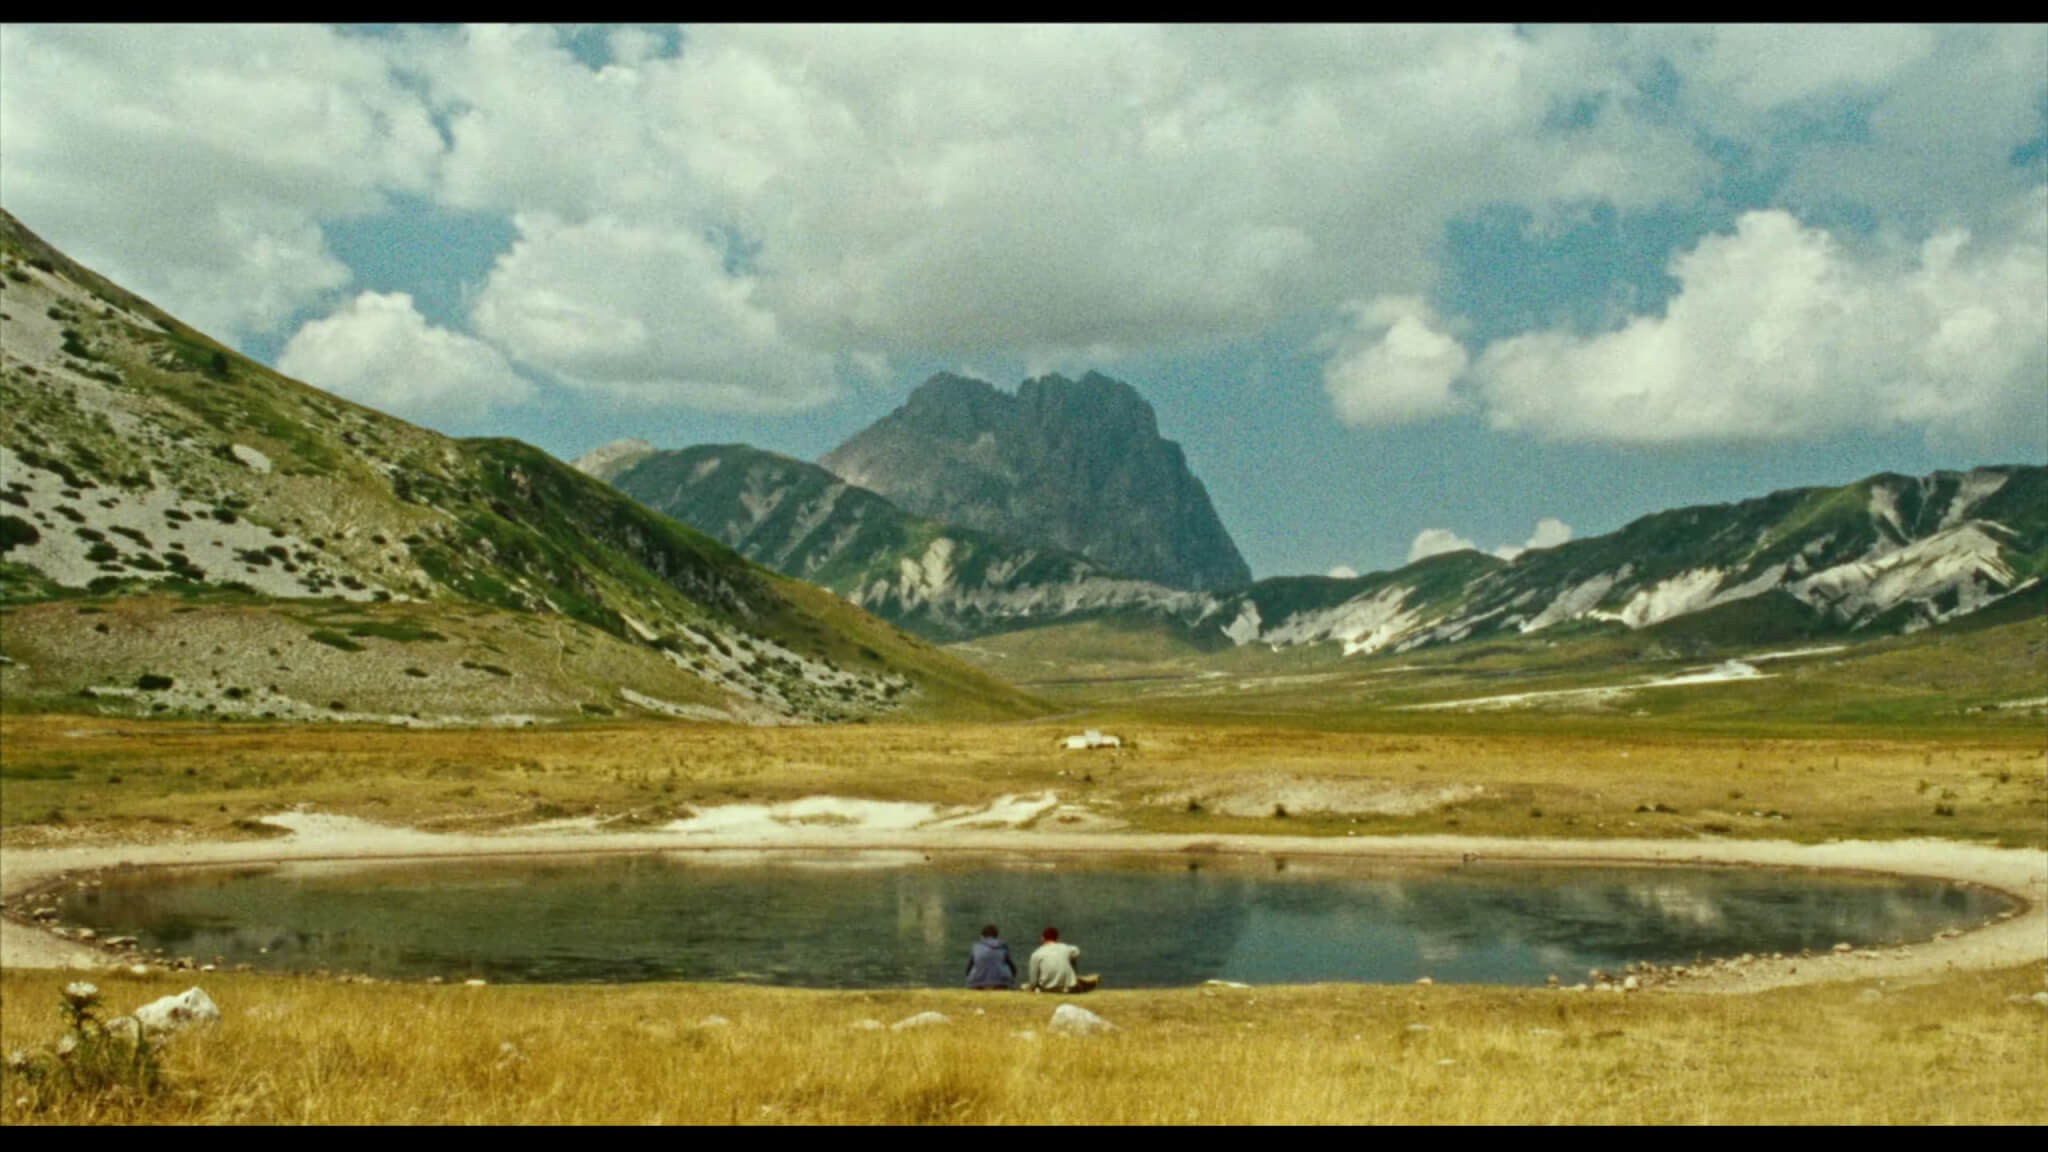 "Patagonia" un film di Simone Bozzelli con Andrea Fuorto e Augusto Mario Russi